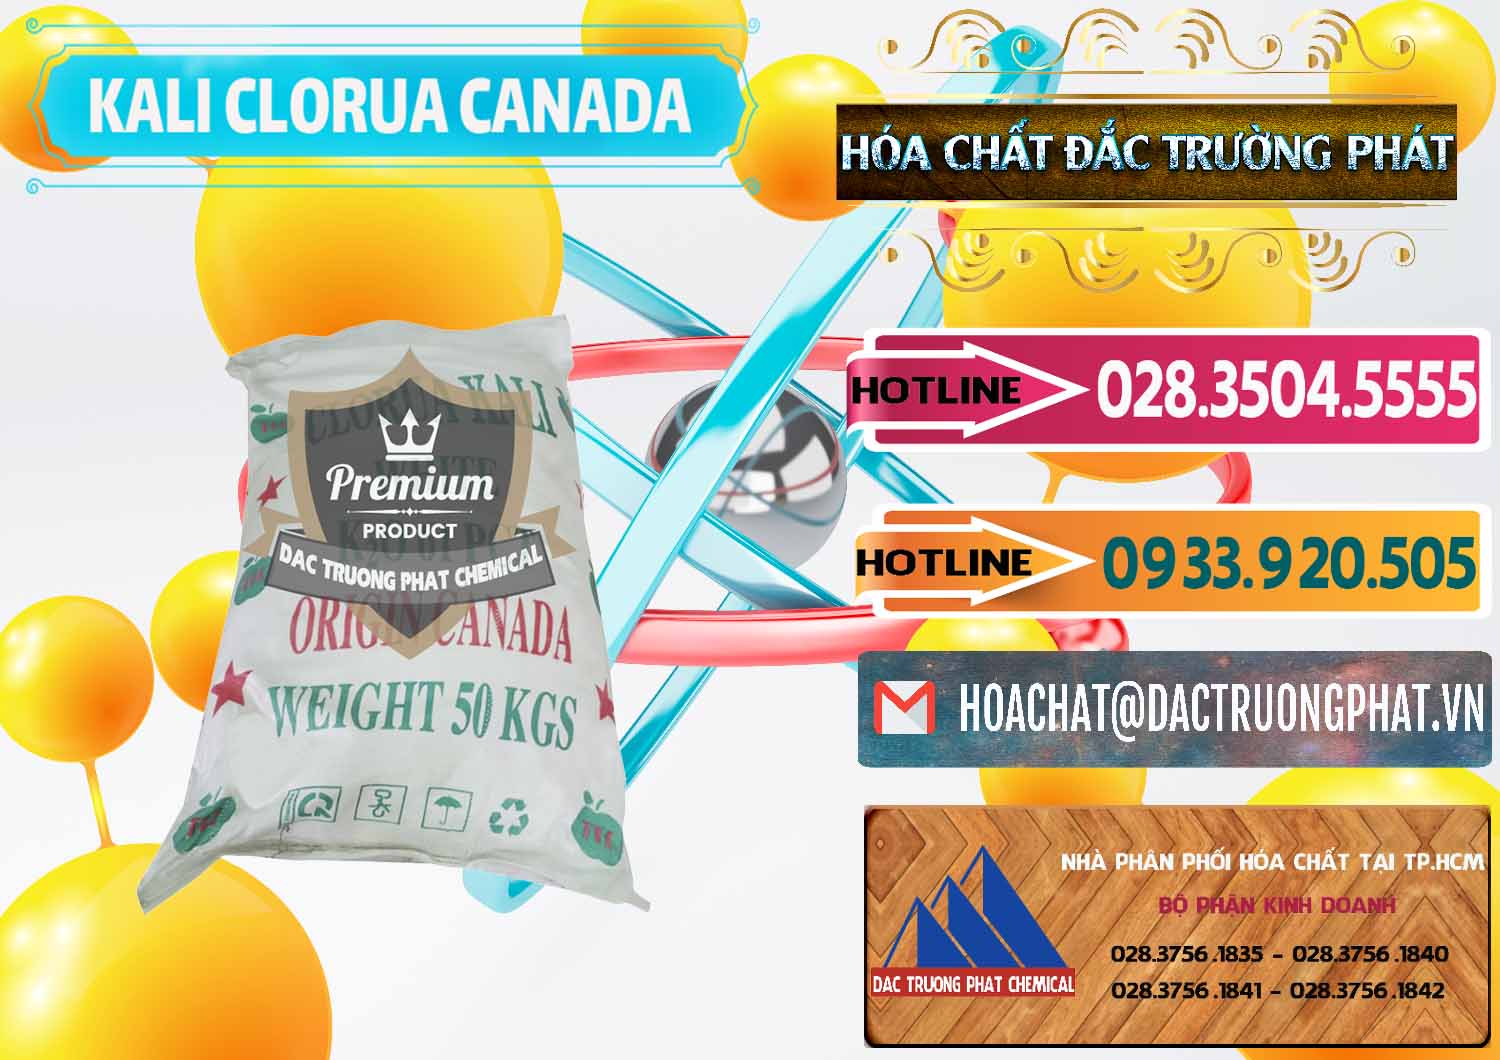 Nơi cung ứng & bán KCL – Kali Clorua Trắng Canada - 0437 - Cty cung ứng & phân phối hóa chất tại TP.HCM - dactruongphat.vn